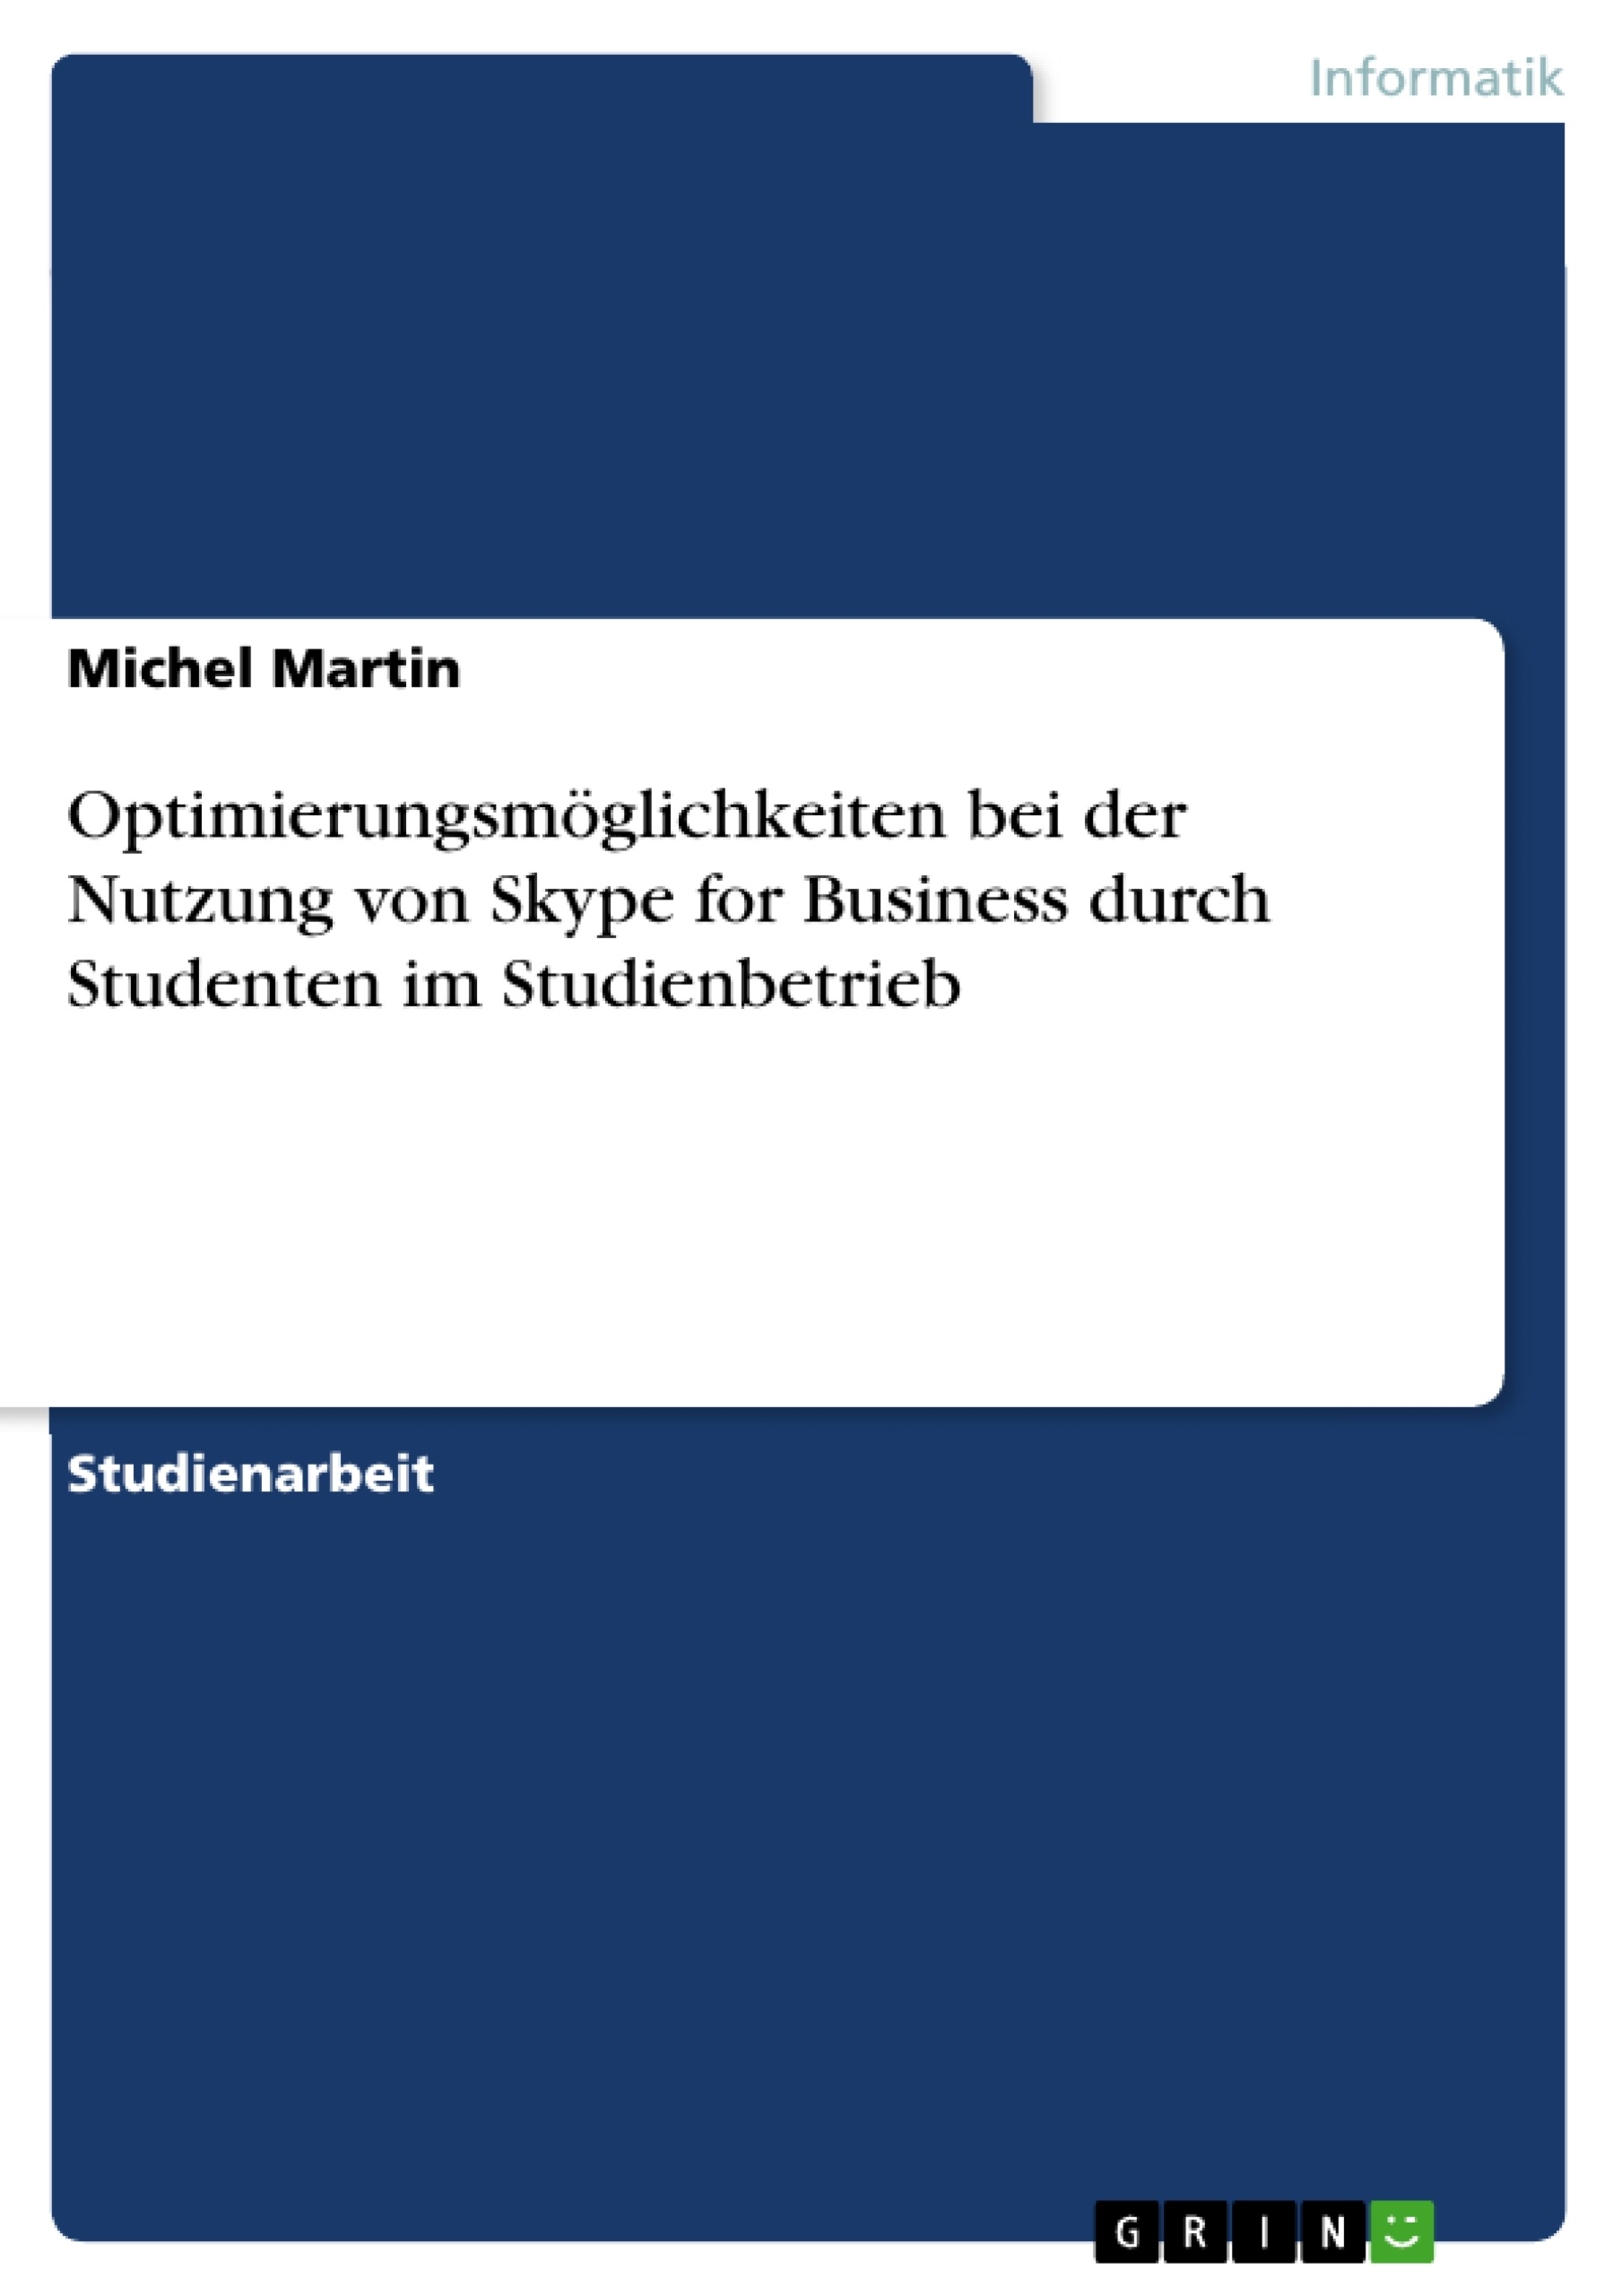 Título: Optimierungsmöglichkeiten bei der Nutzung von Skype for Business durch Studenten im Studienbetrieb